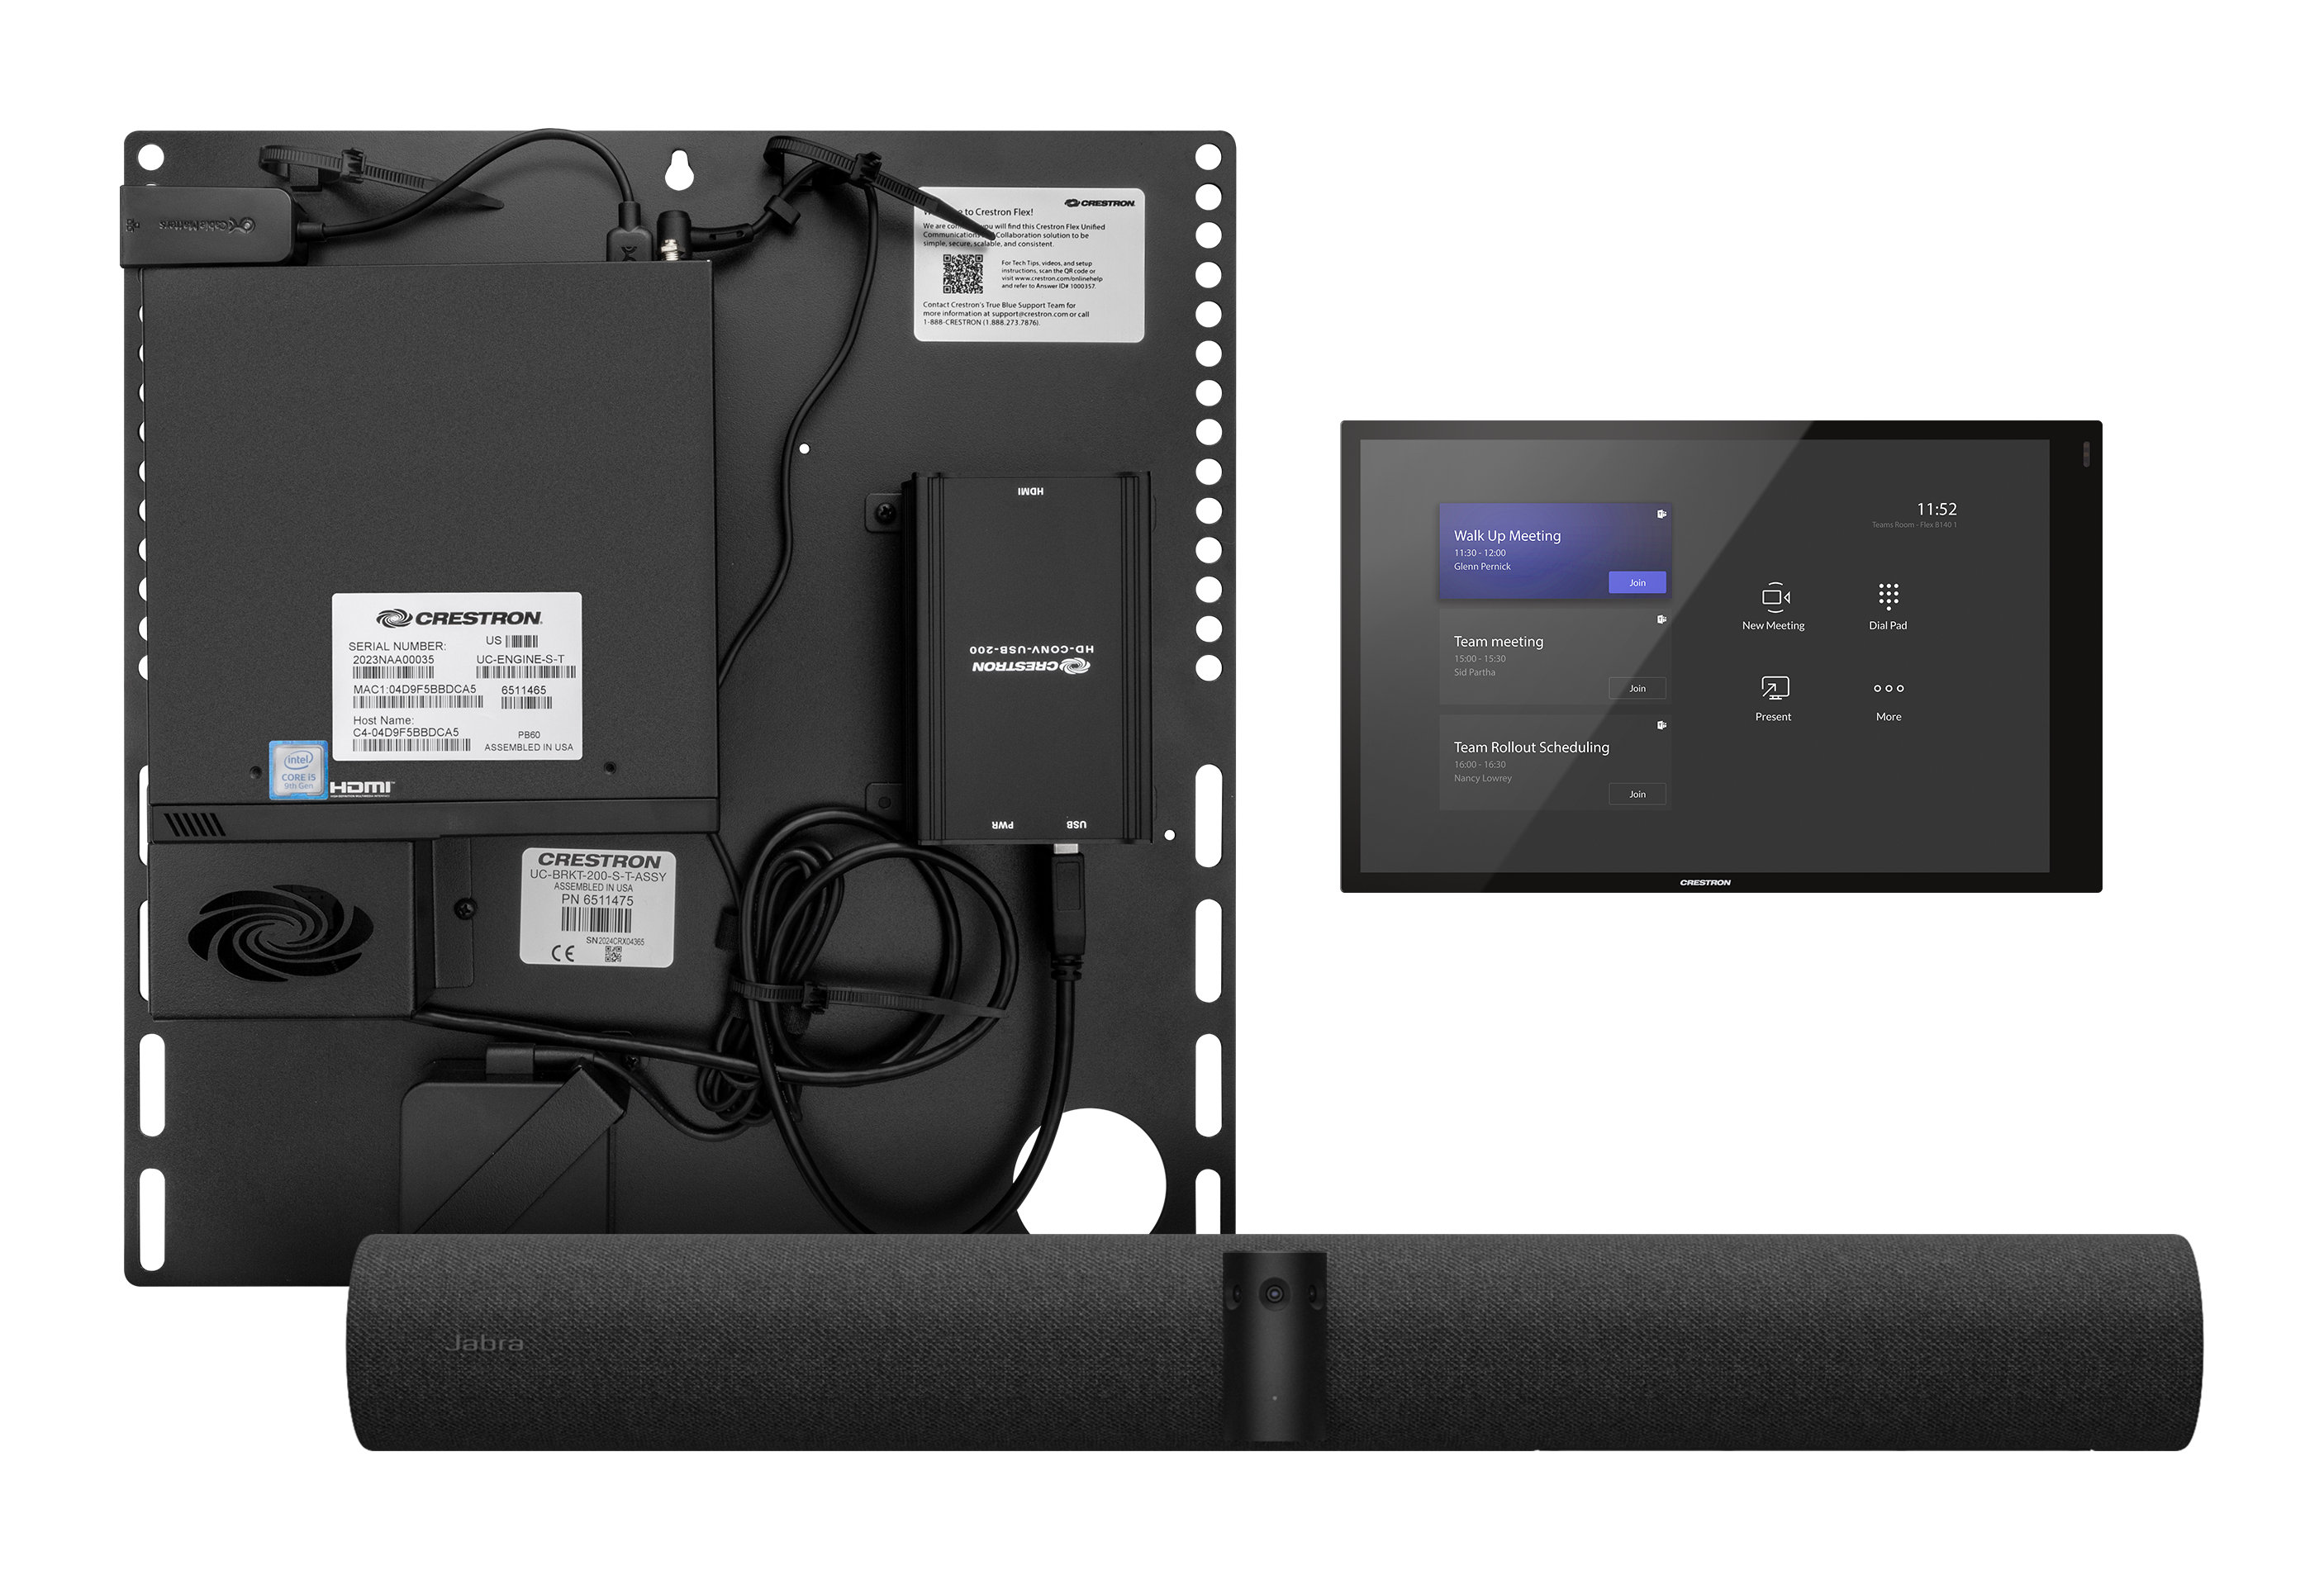 Crestron Flex Small Room videokonferenssystem 13 MP Nätverksansluten (Ethernet) Videokonferenssystem för grupper